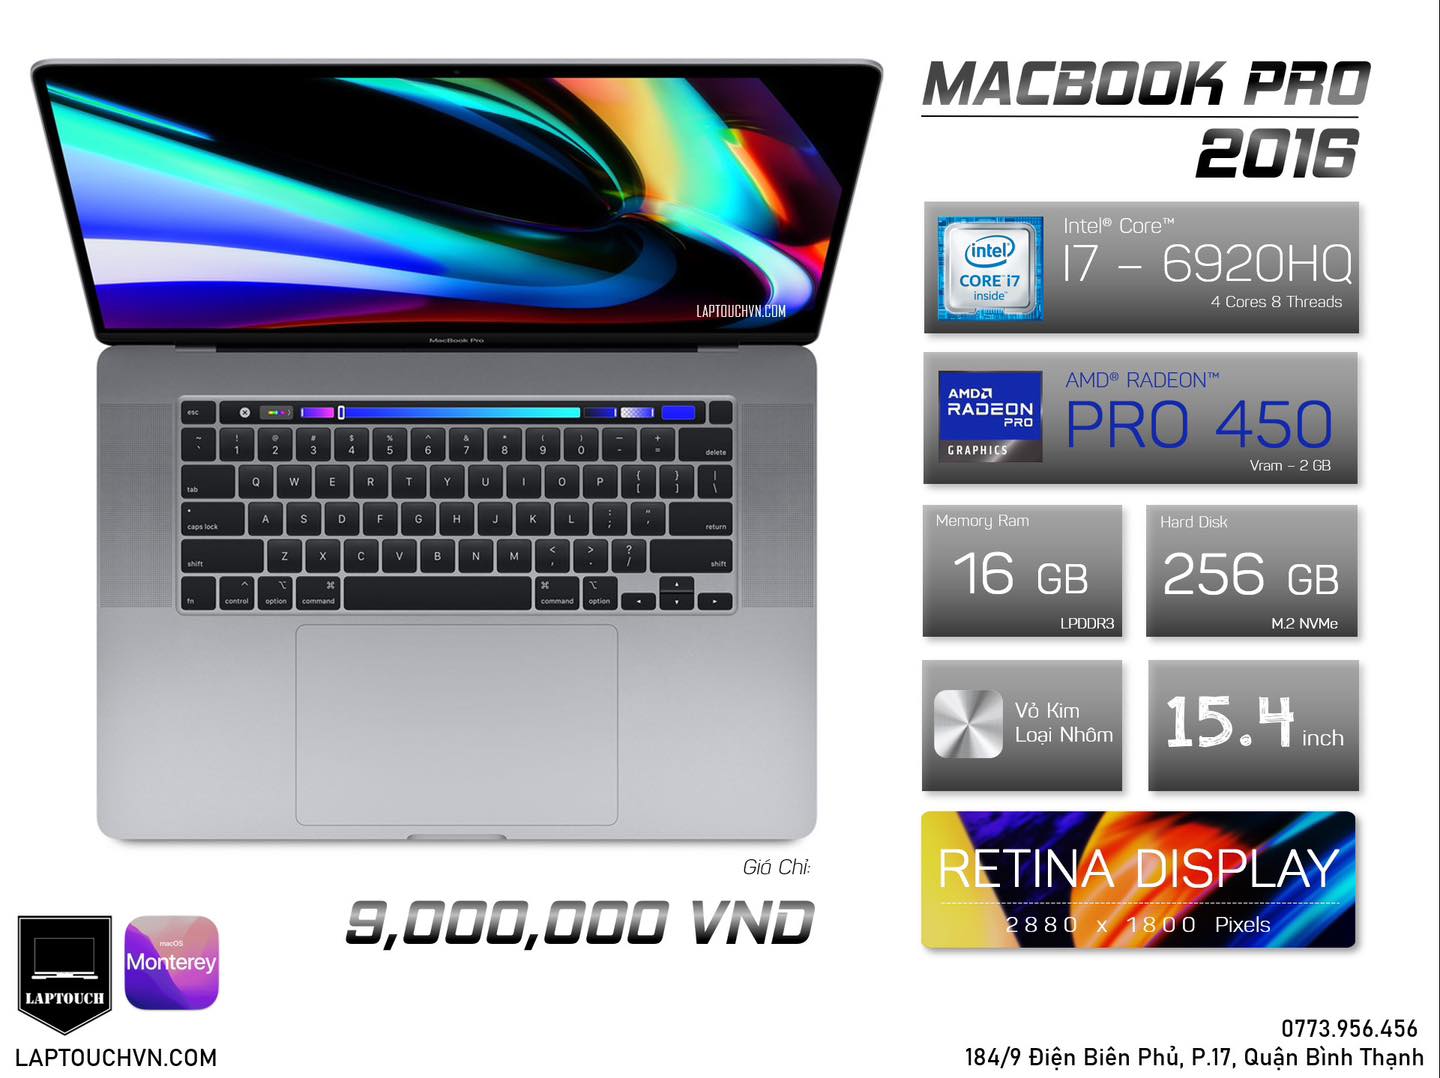 Macbook Pro Retina 15 [ 2016 TouchBar ]